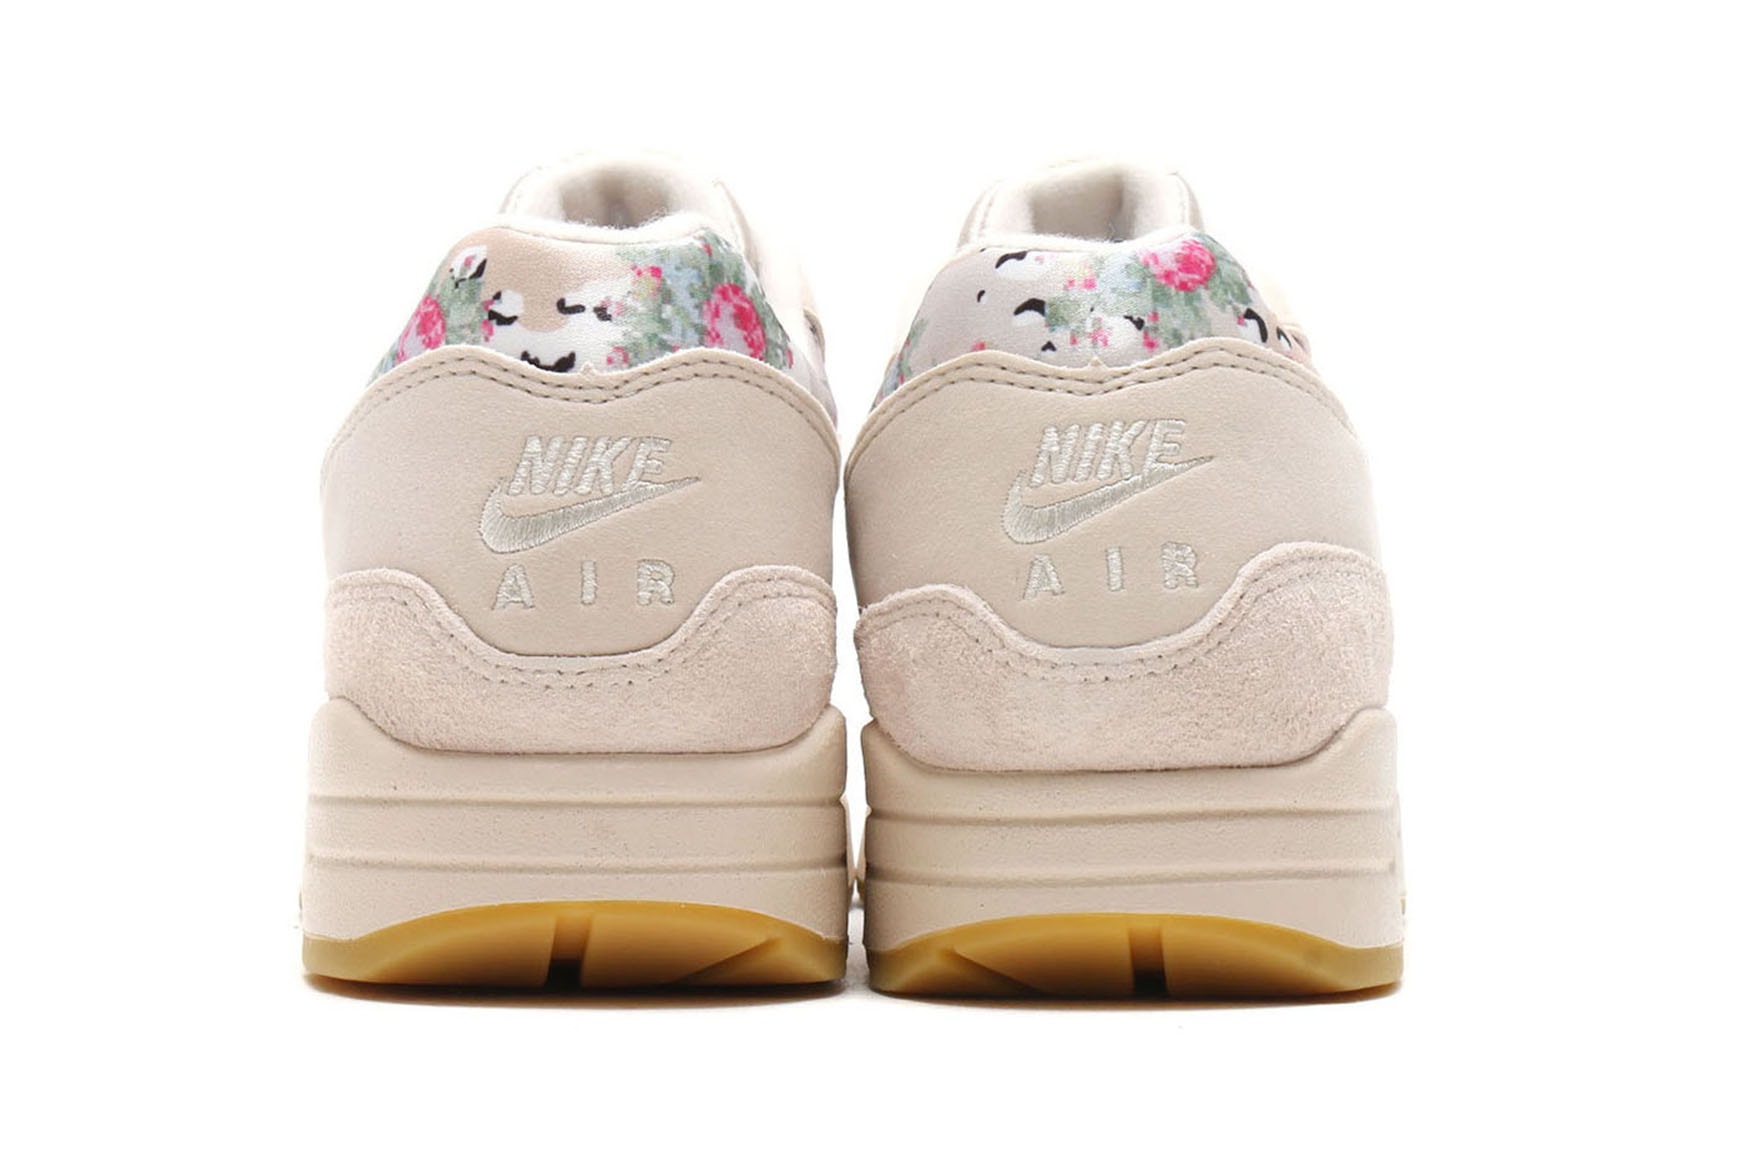 Nike Air Max 1 "Desert Camo/Floral" Sleek Sneaker Shoe Beige Tan Air Unit Spring Summer